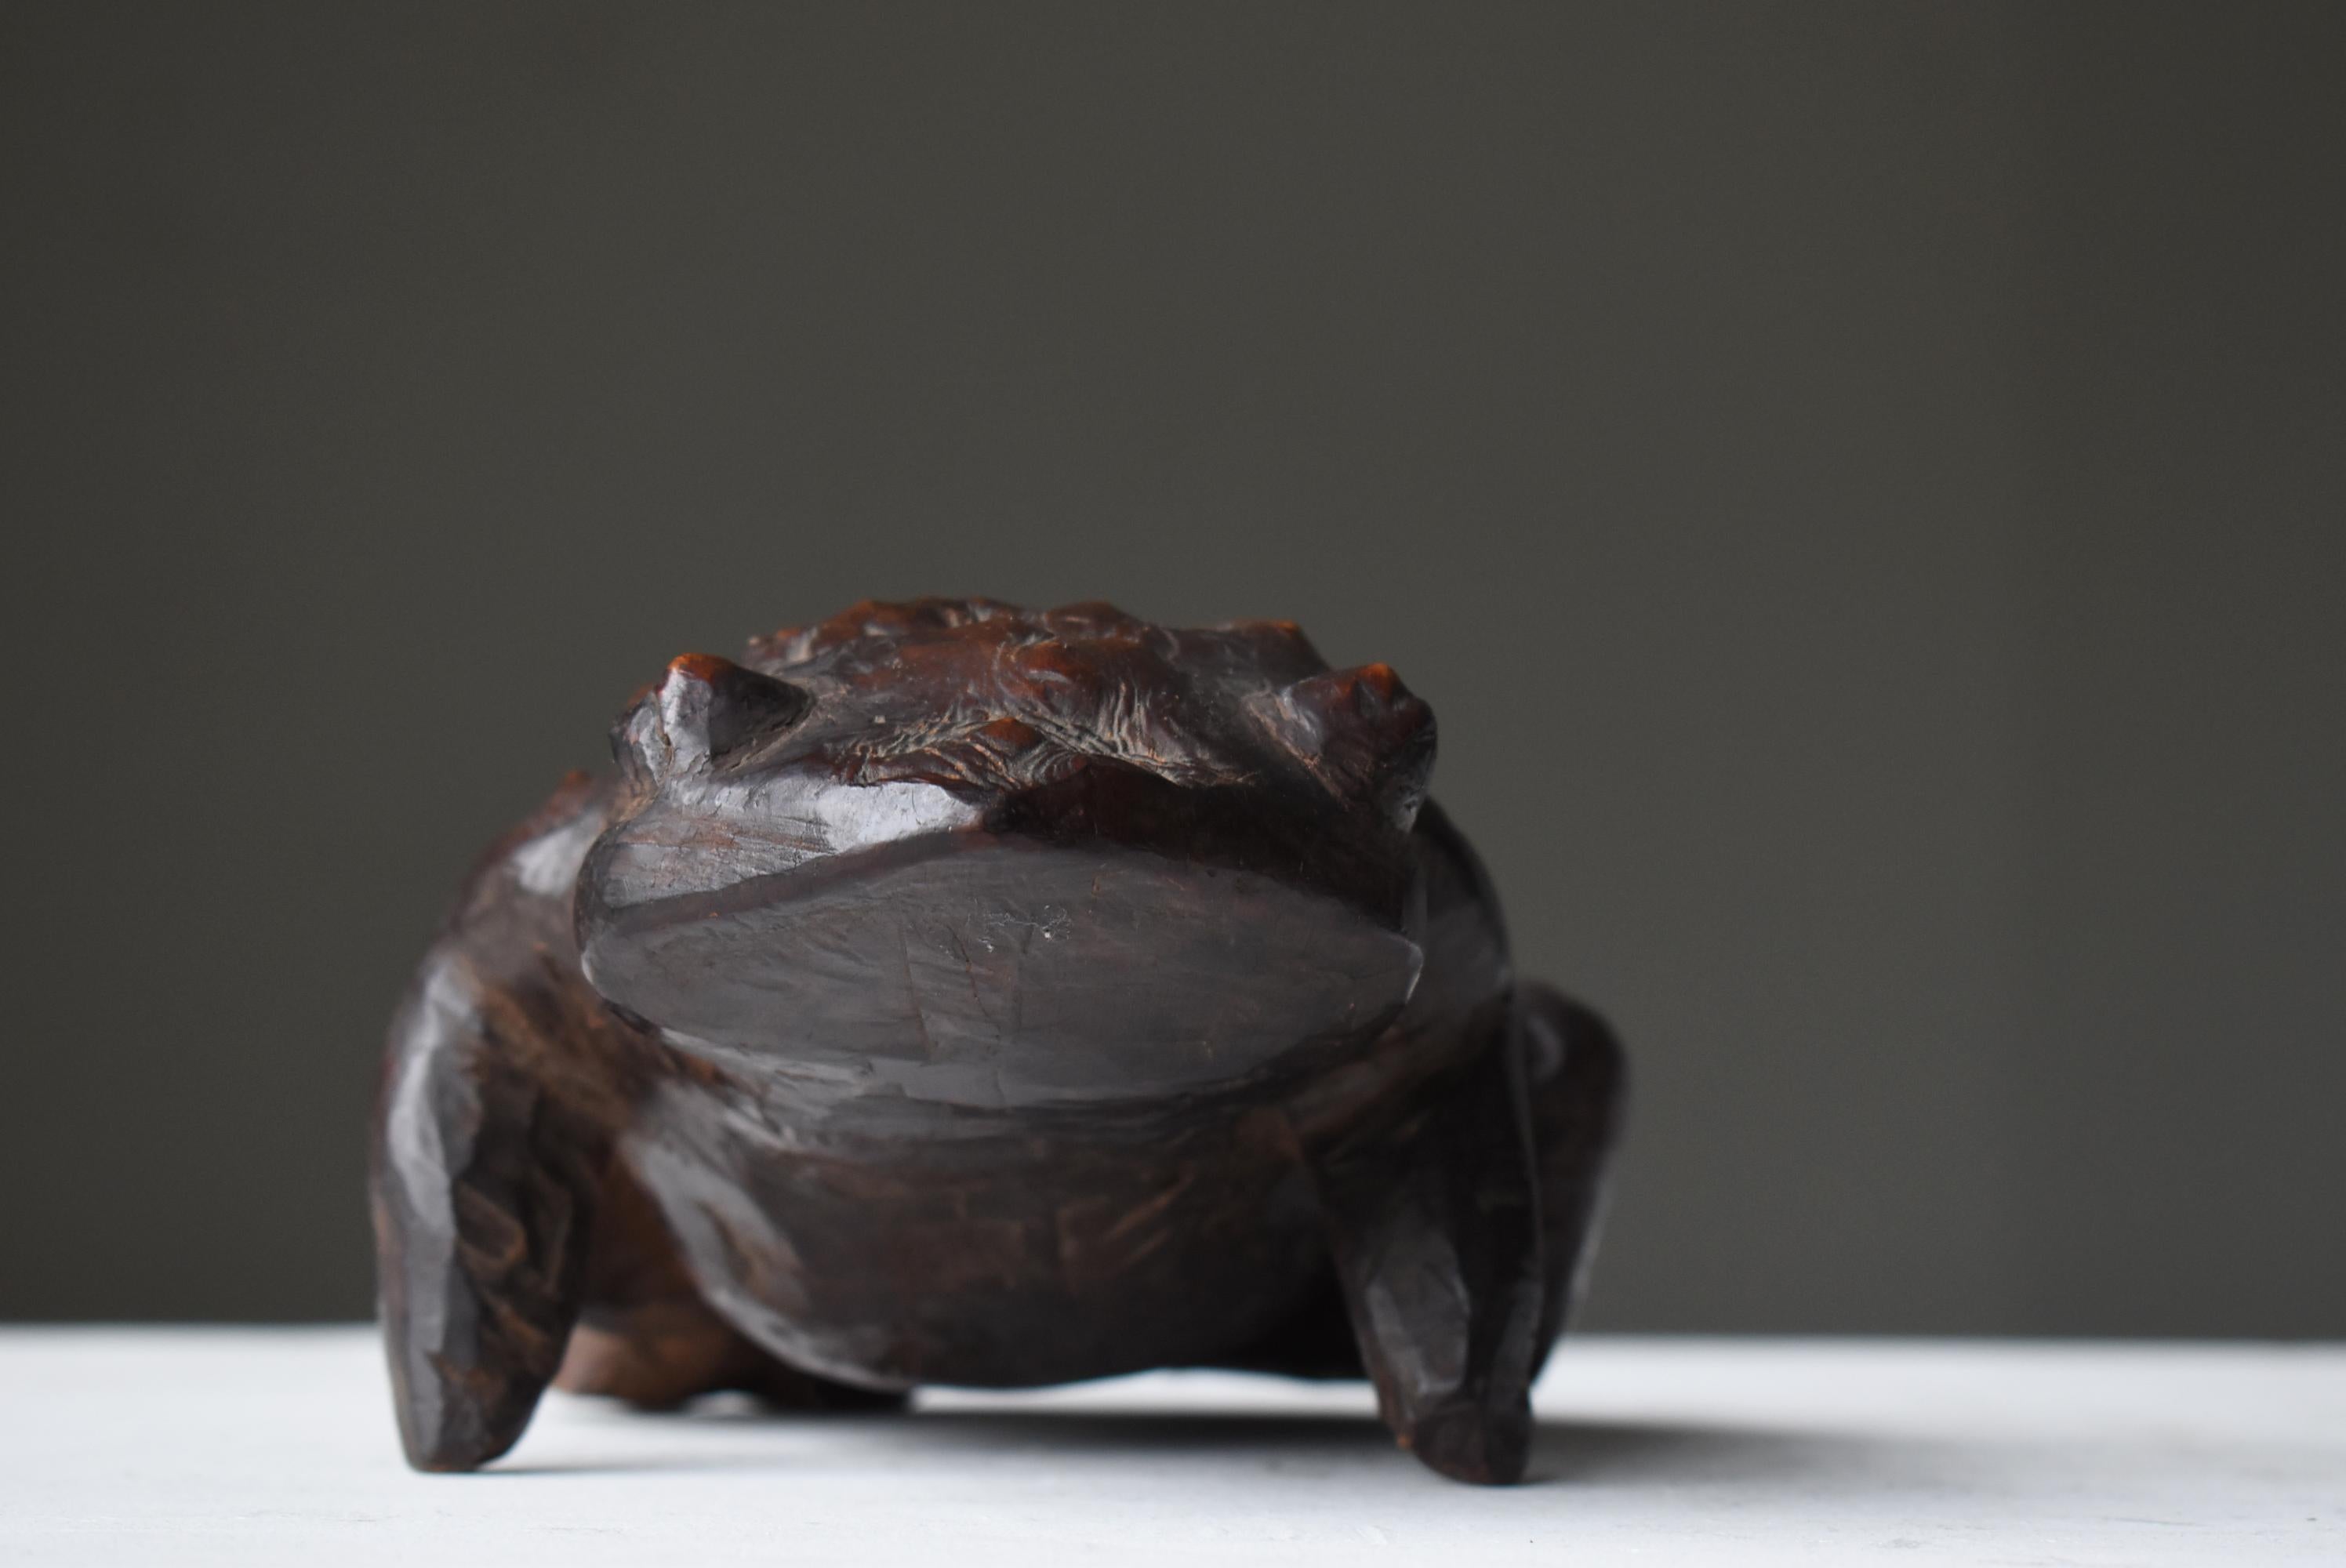 Japanese Antique Wood Carving Frog 1900s-1940s / Sculpture Wabi Sabi  For Sale 3